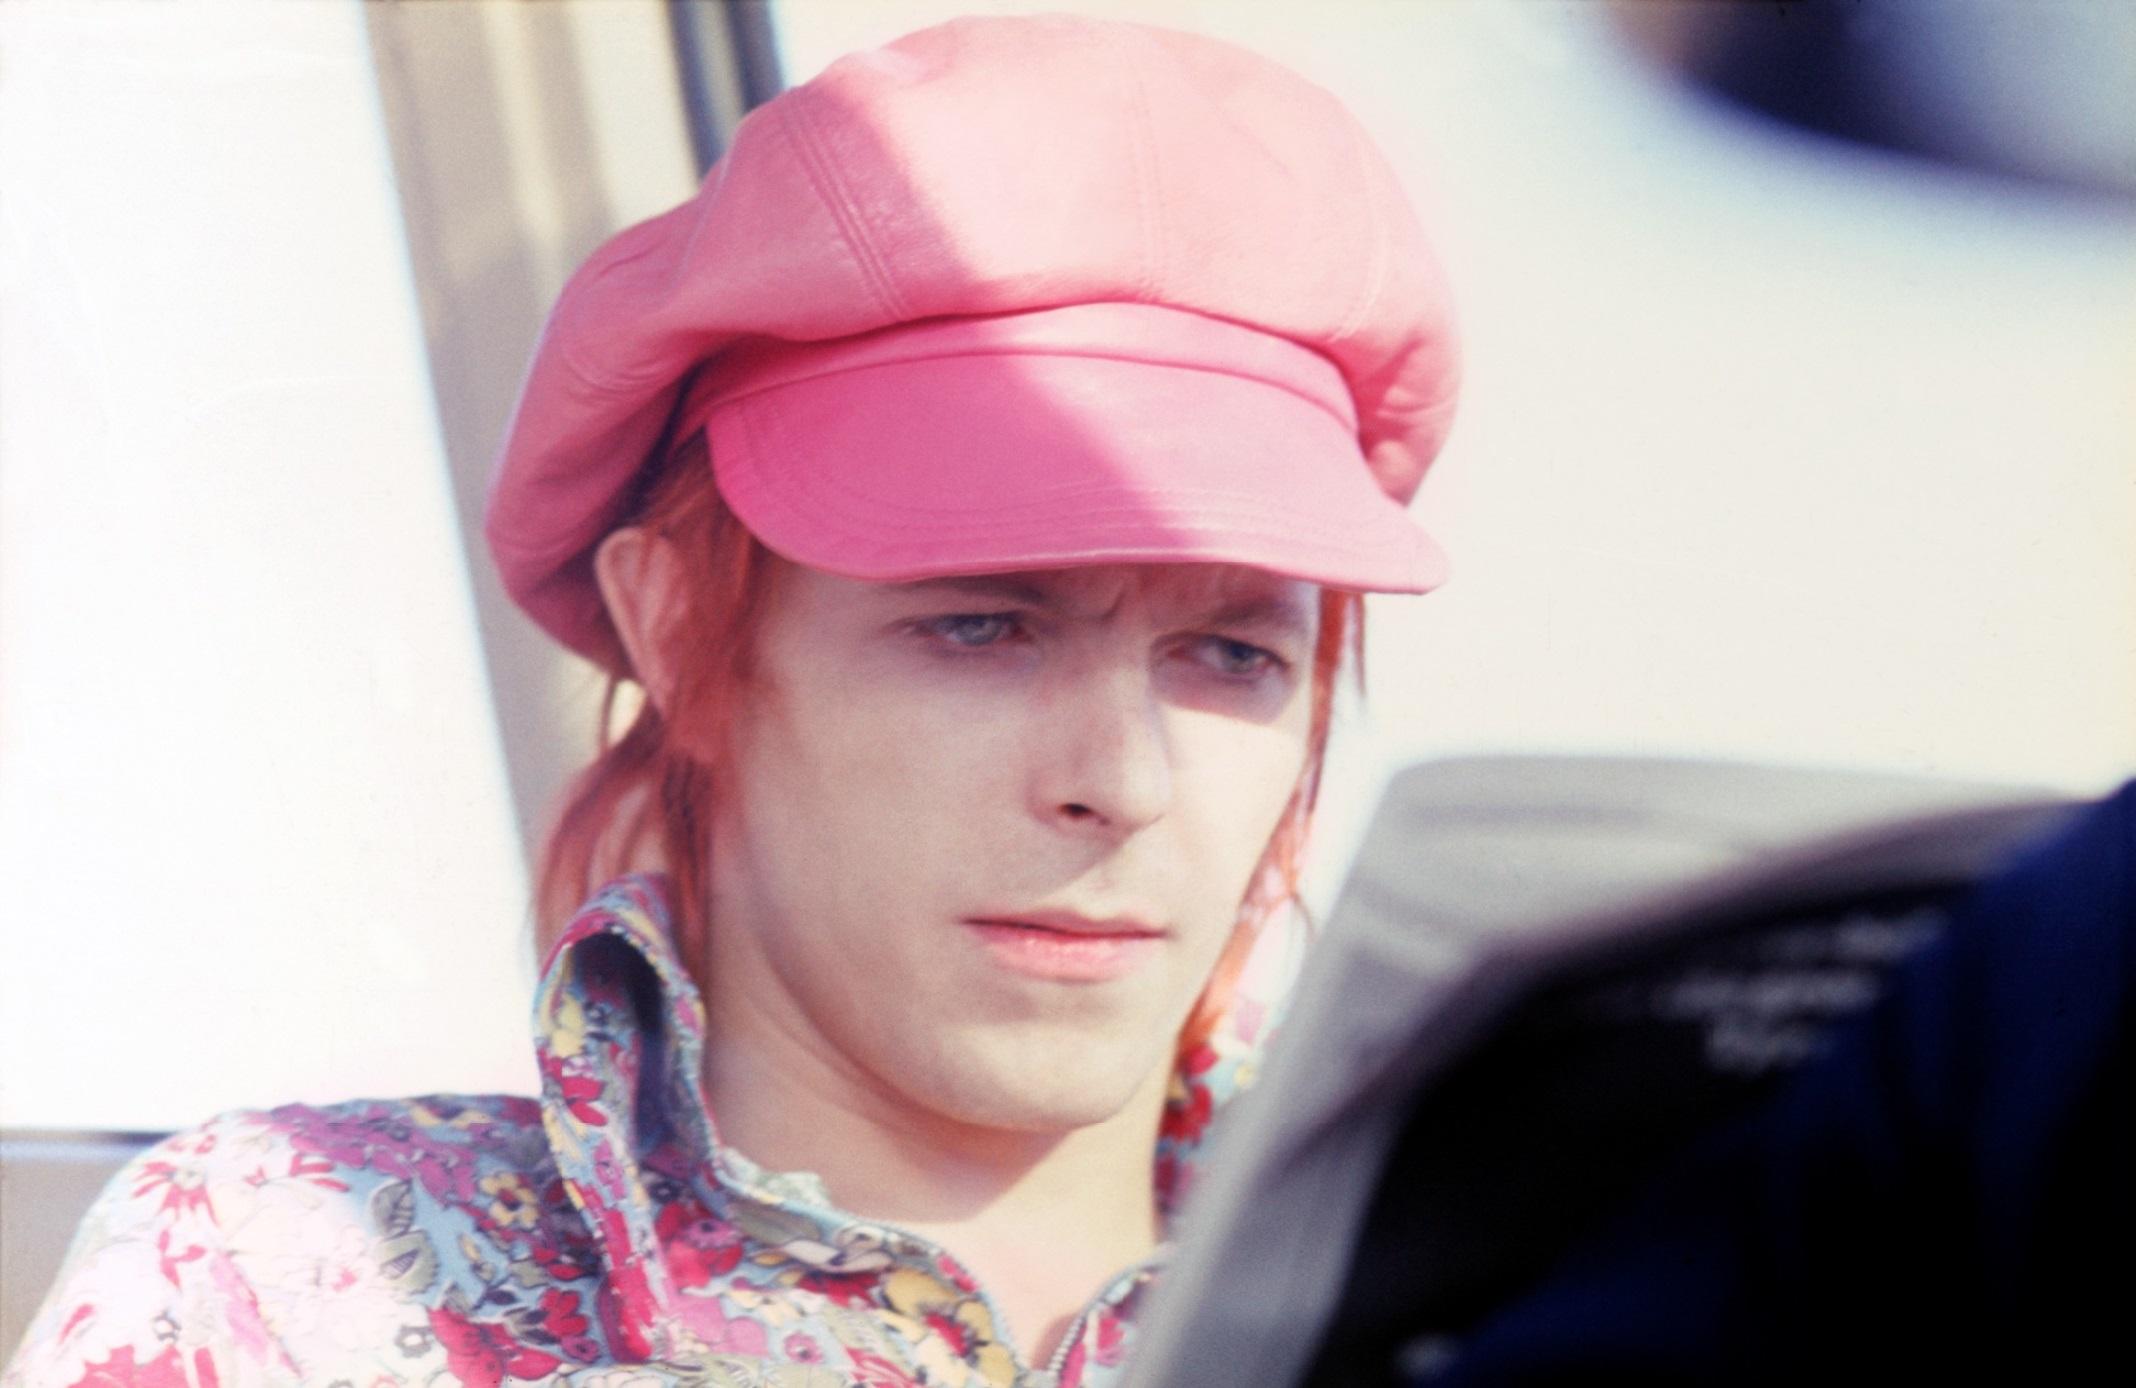 David Bowie - signierter Druck in limitierter Auflage 

David Bowie mit rosa Hut, 1972. (Foto Mick Rock)

Papierformat: 51 x 61 cm (24x20 Zoll)

Gestempelt und nummeriert vom Nachlass.

Archivierungspigmentdruck.

Limitierte Auflage von 50